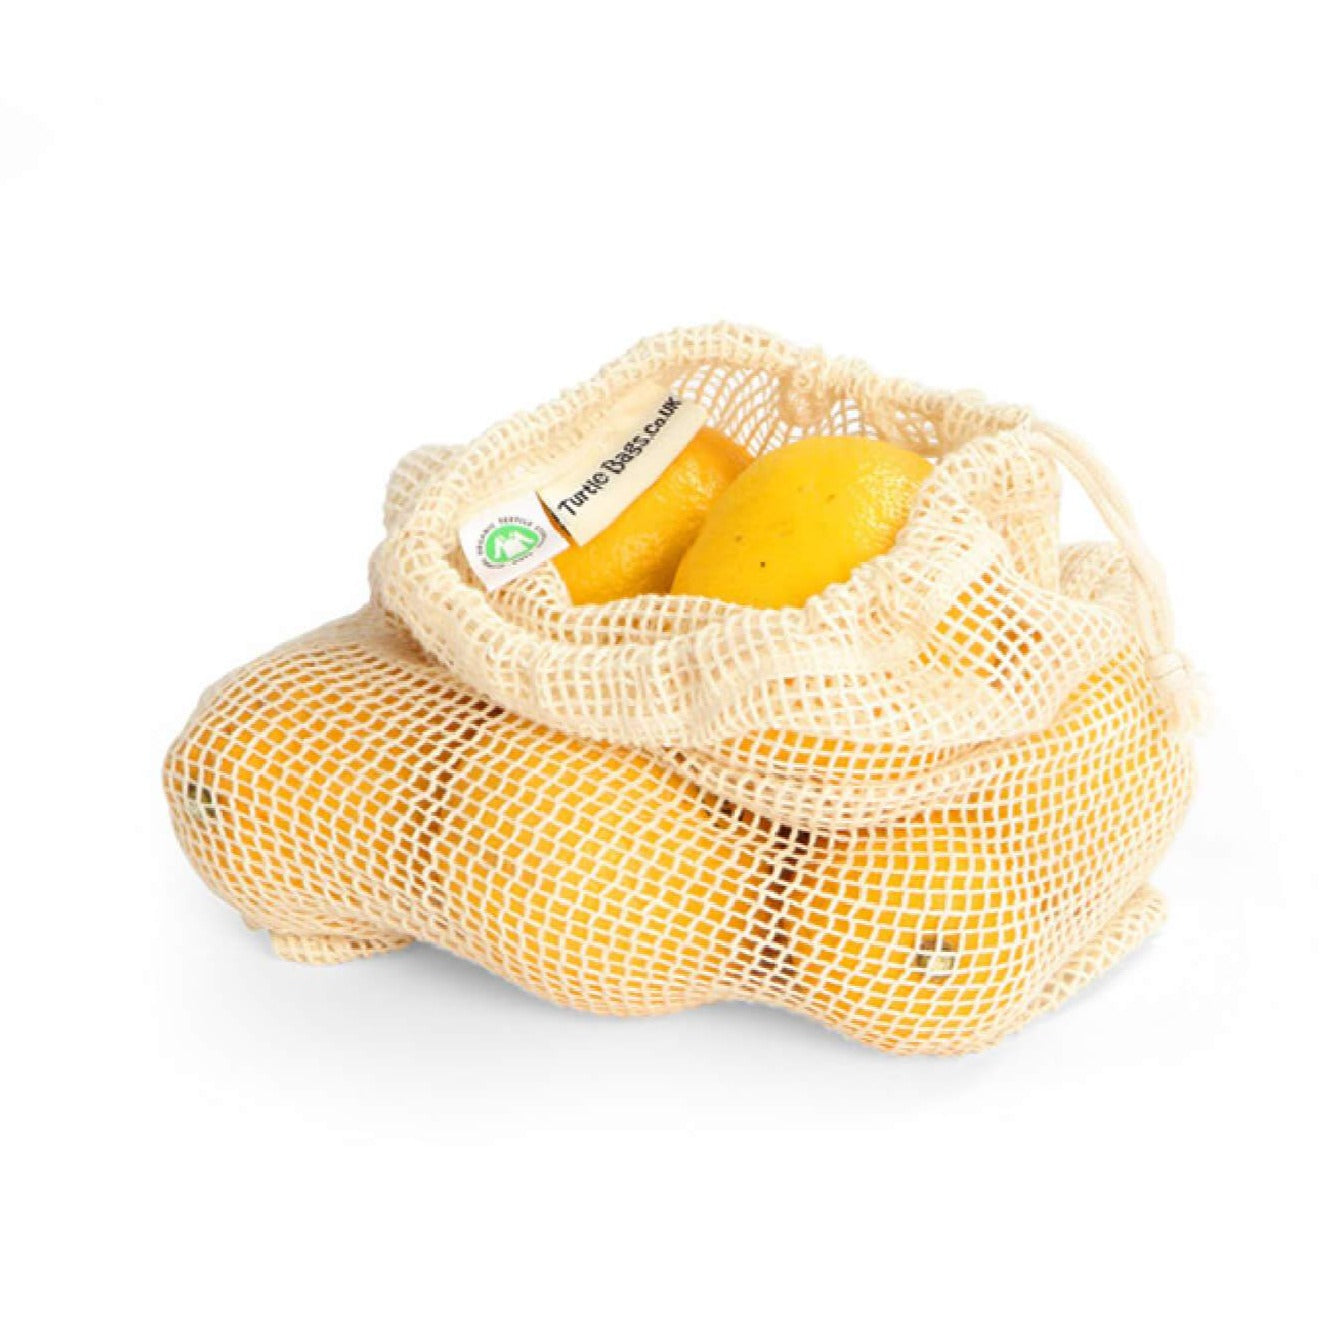 medium size produce bag with lemons inside